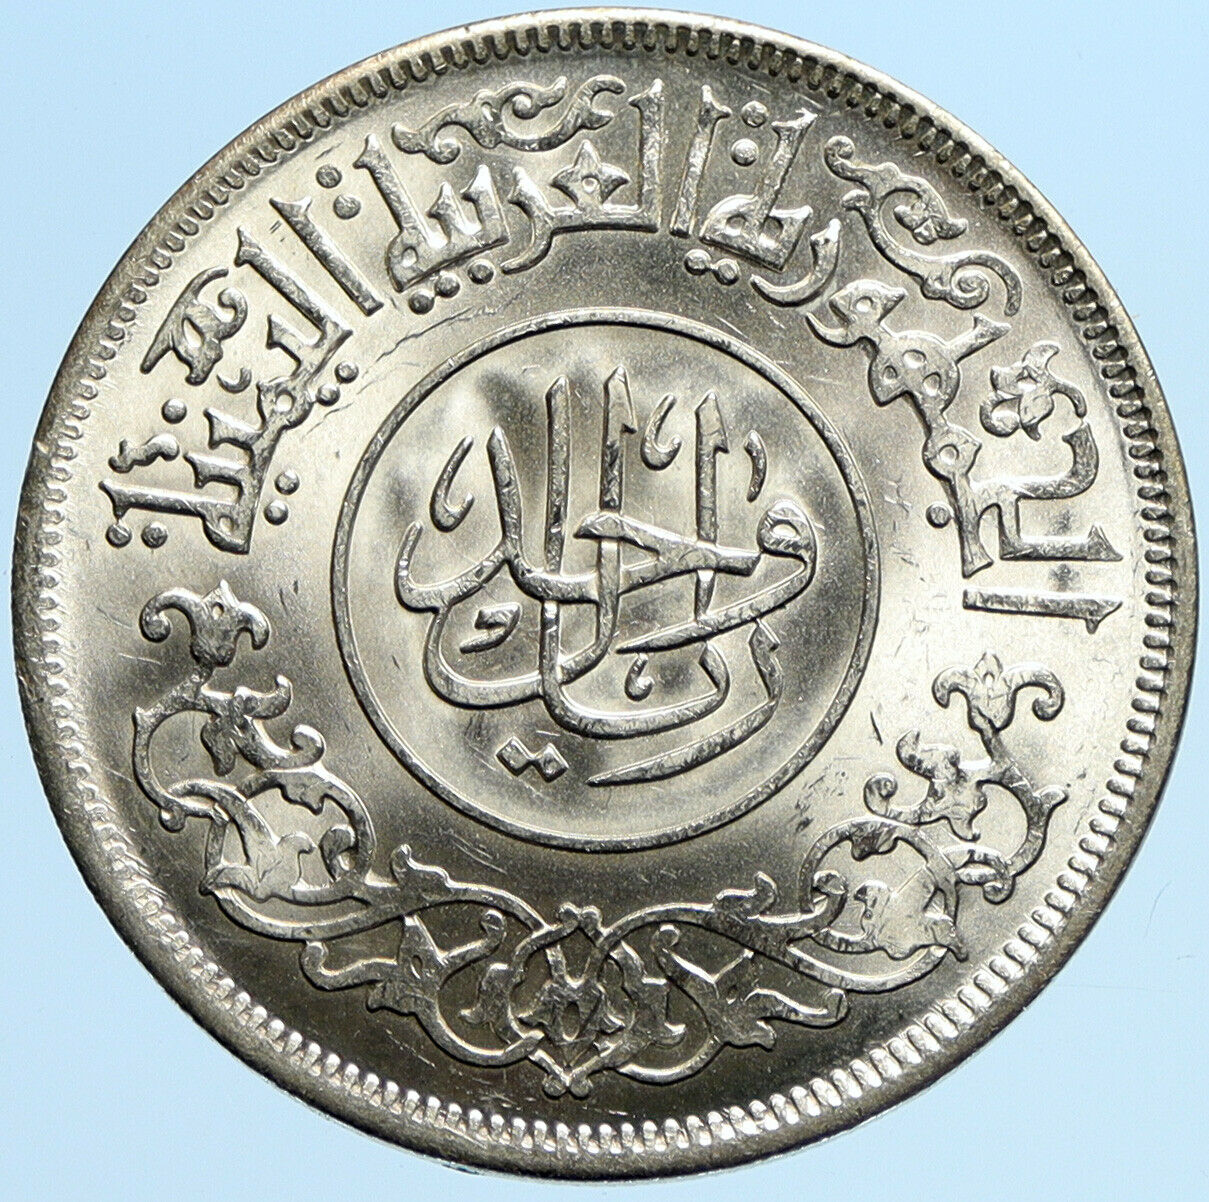 1963 1382 AH YEMEN Arab Republic Leafy Branch Genuine Silver Riyal Coin i97689